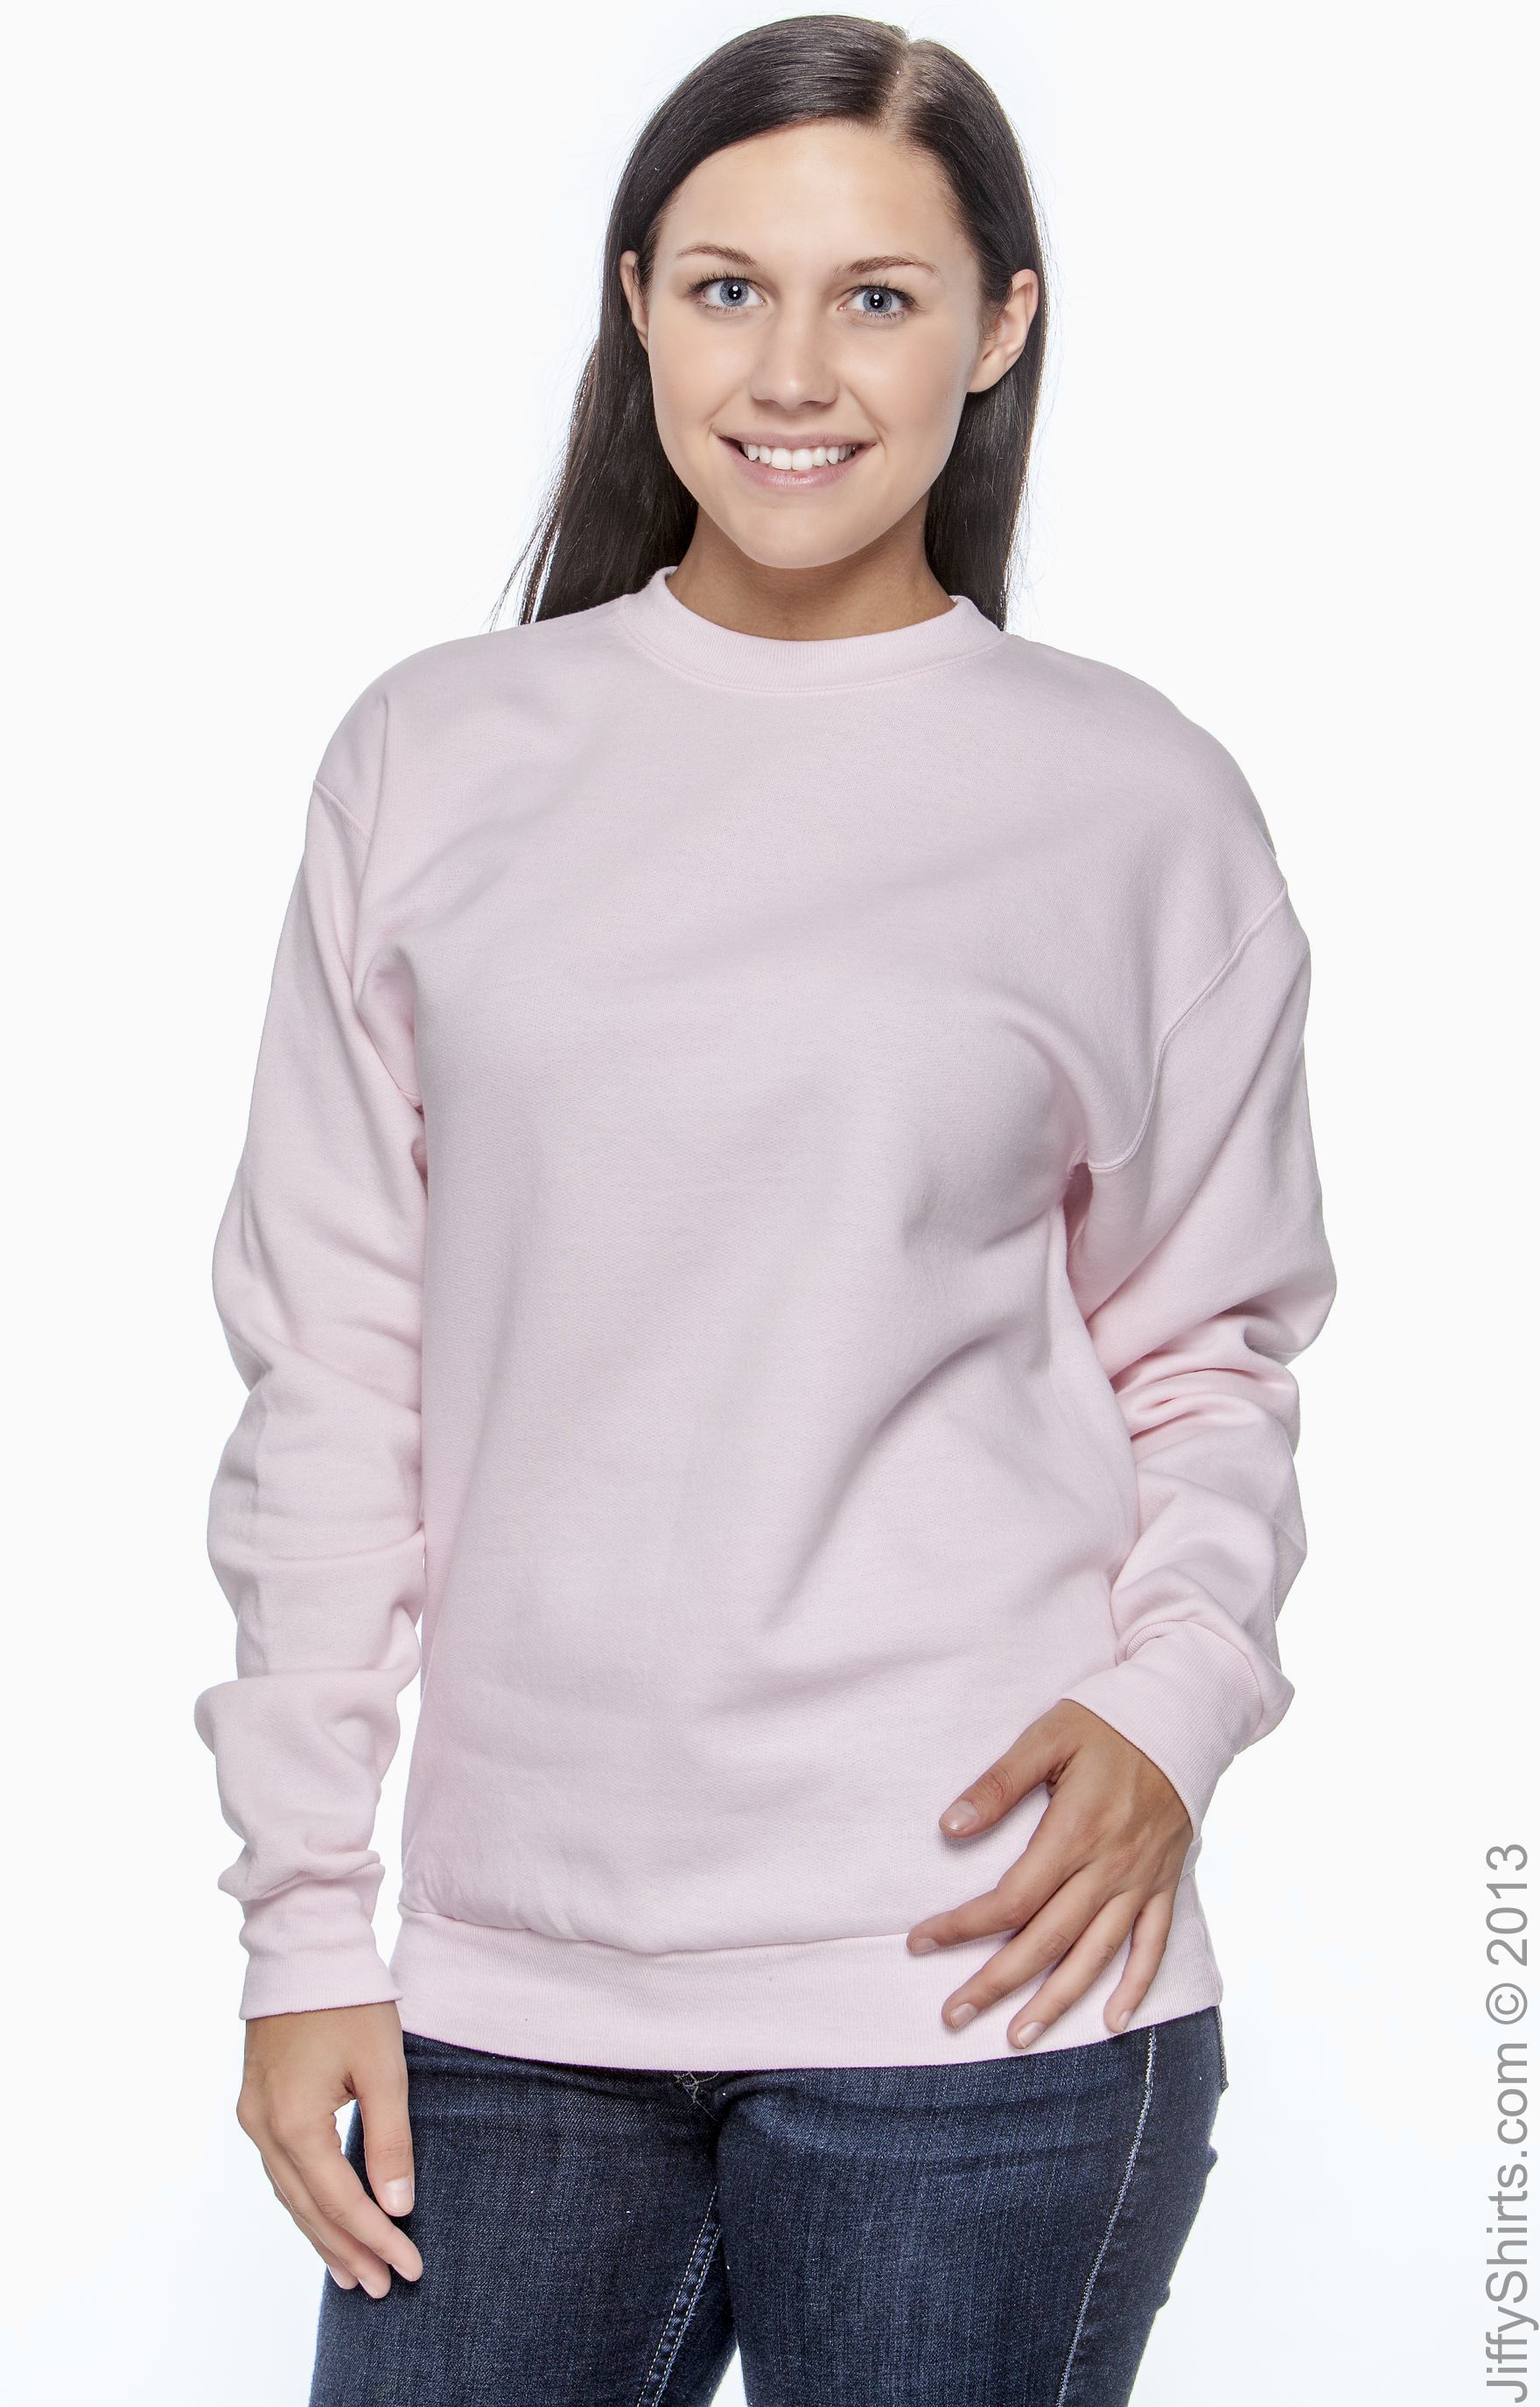 pink hanes sweatshirt